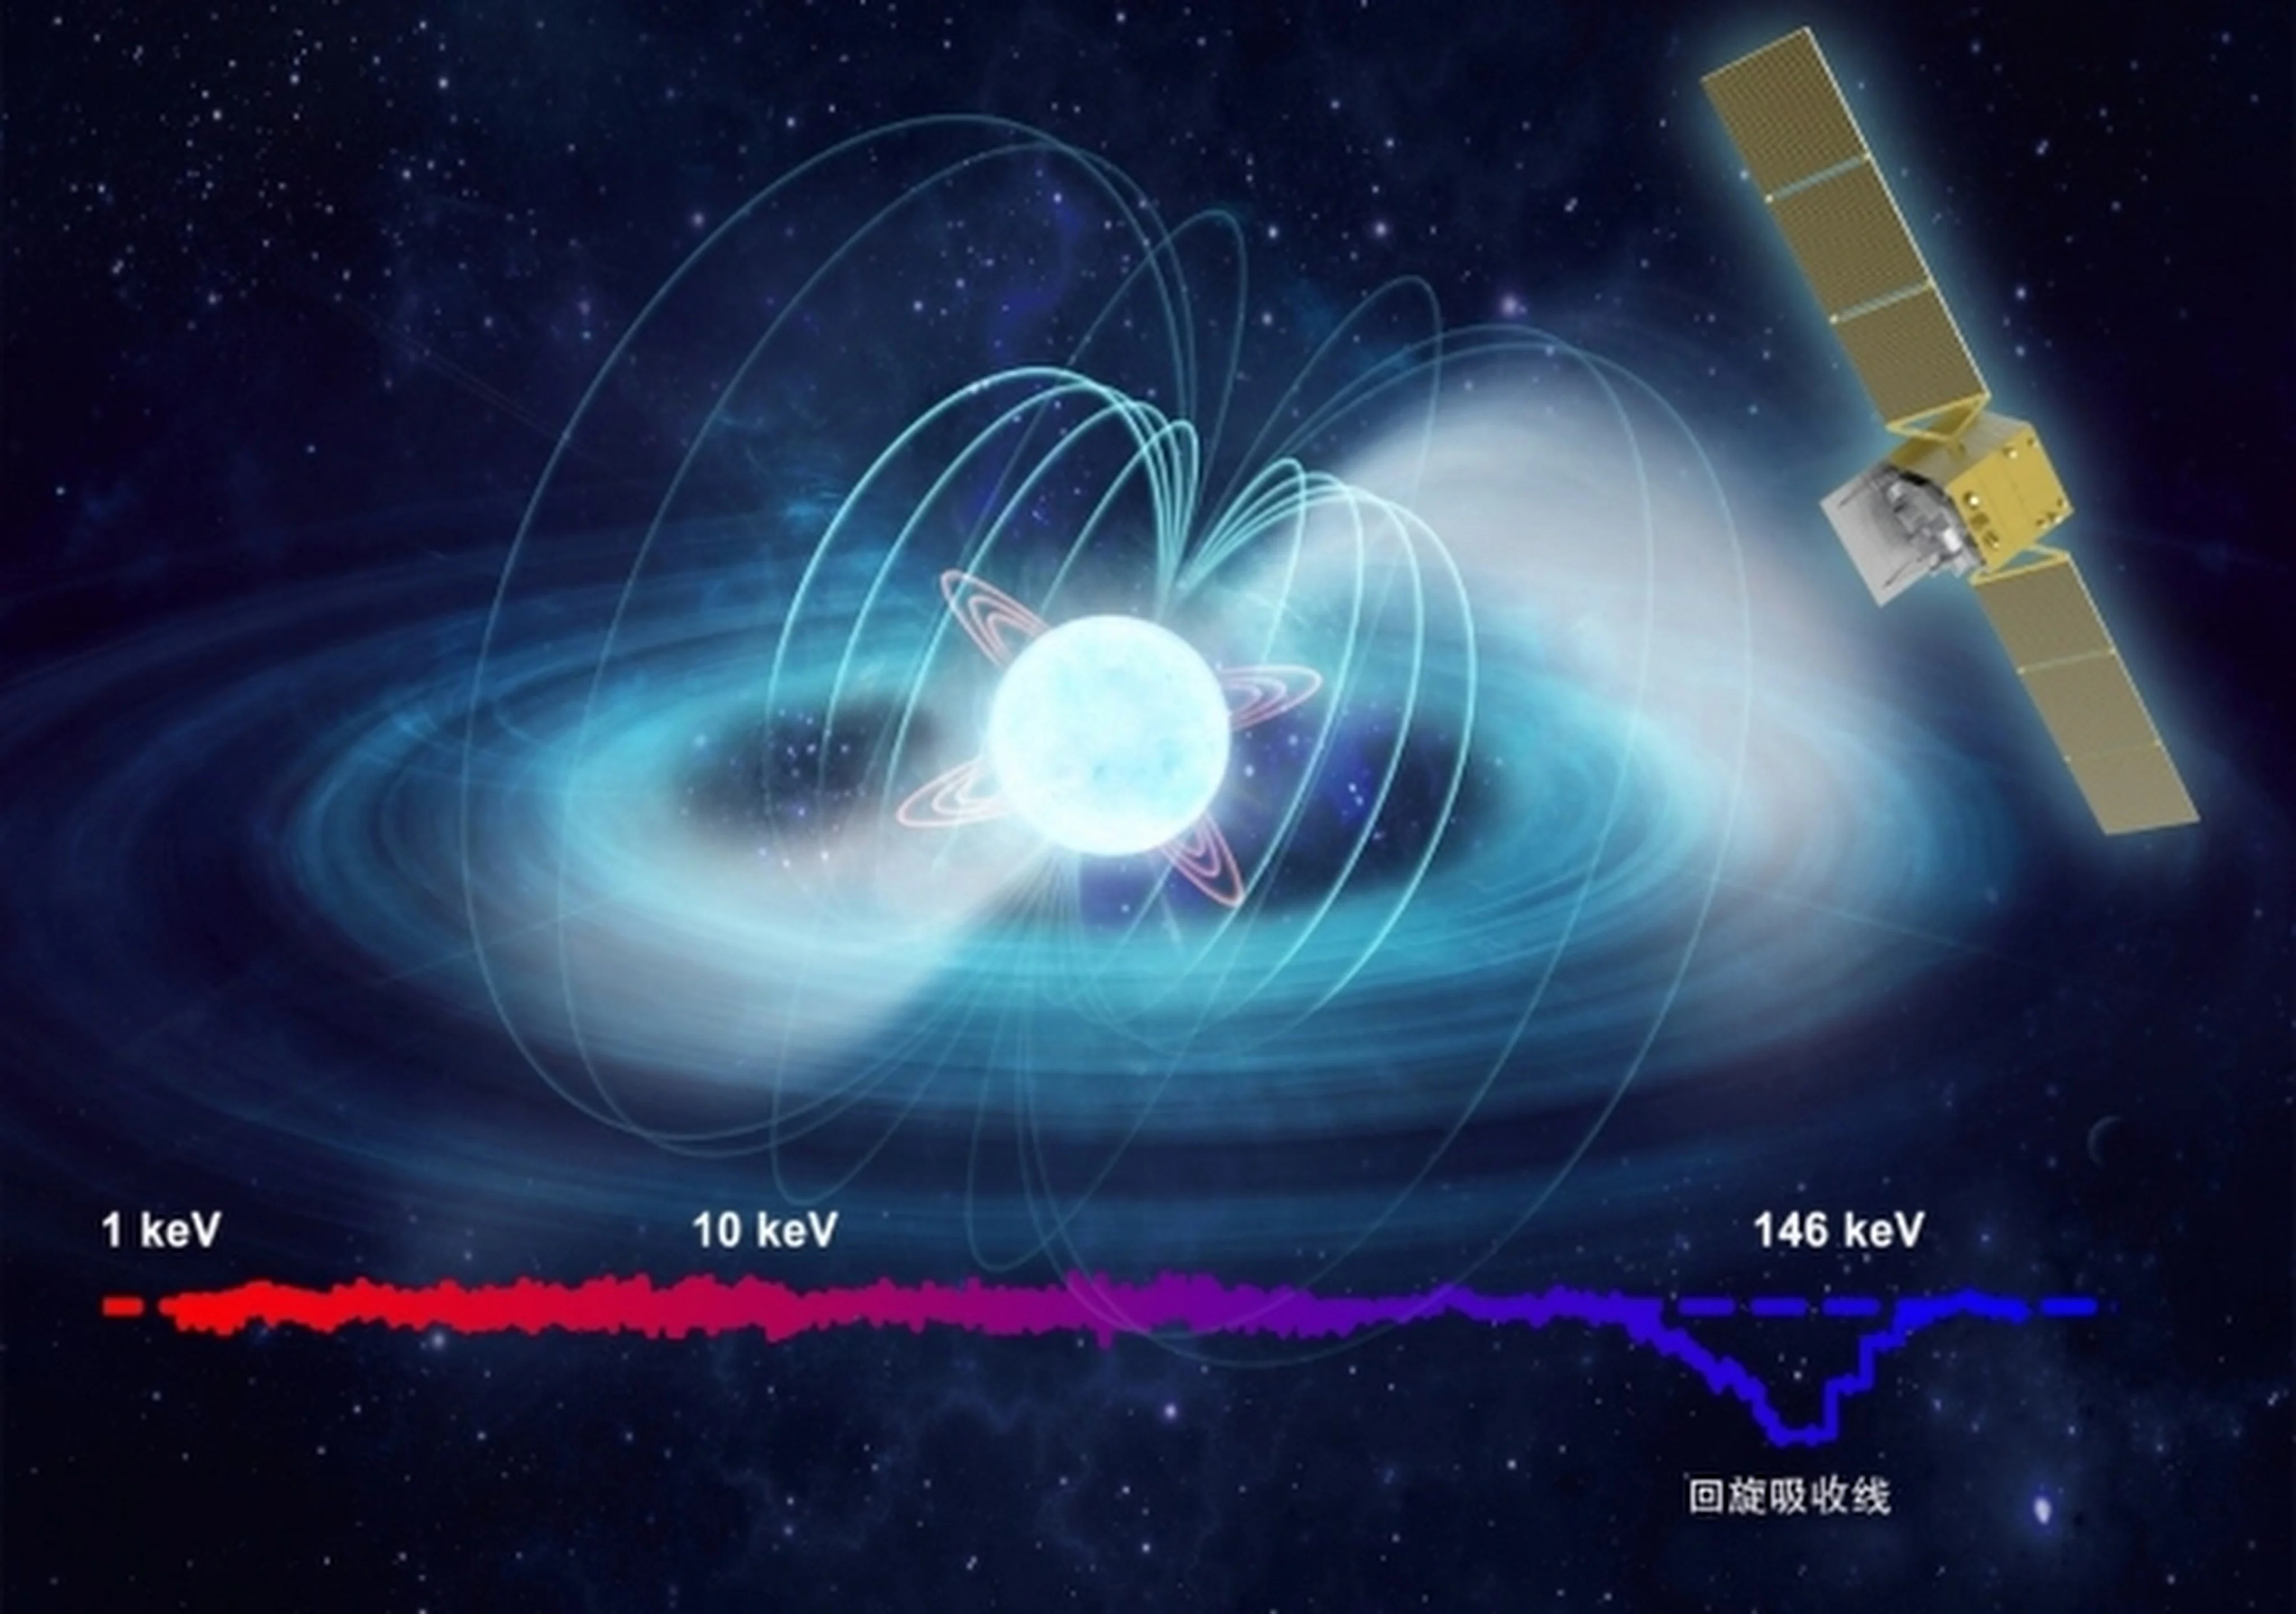 ۲ ماهواره چینی میدان مغناطیسی زمین را رصد می کنند
